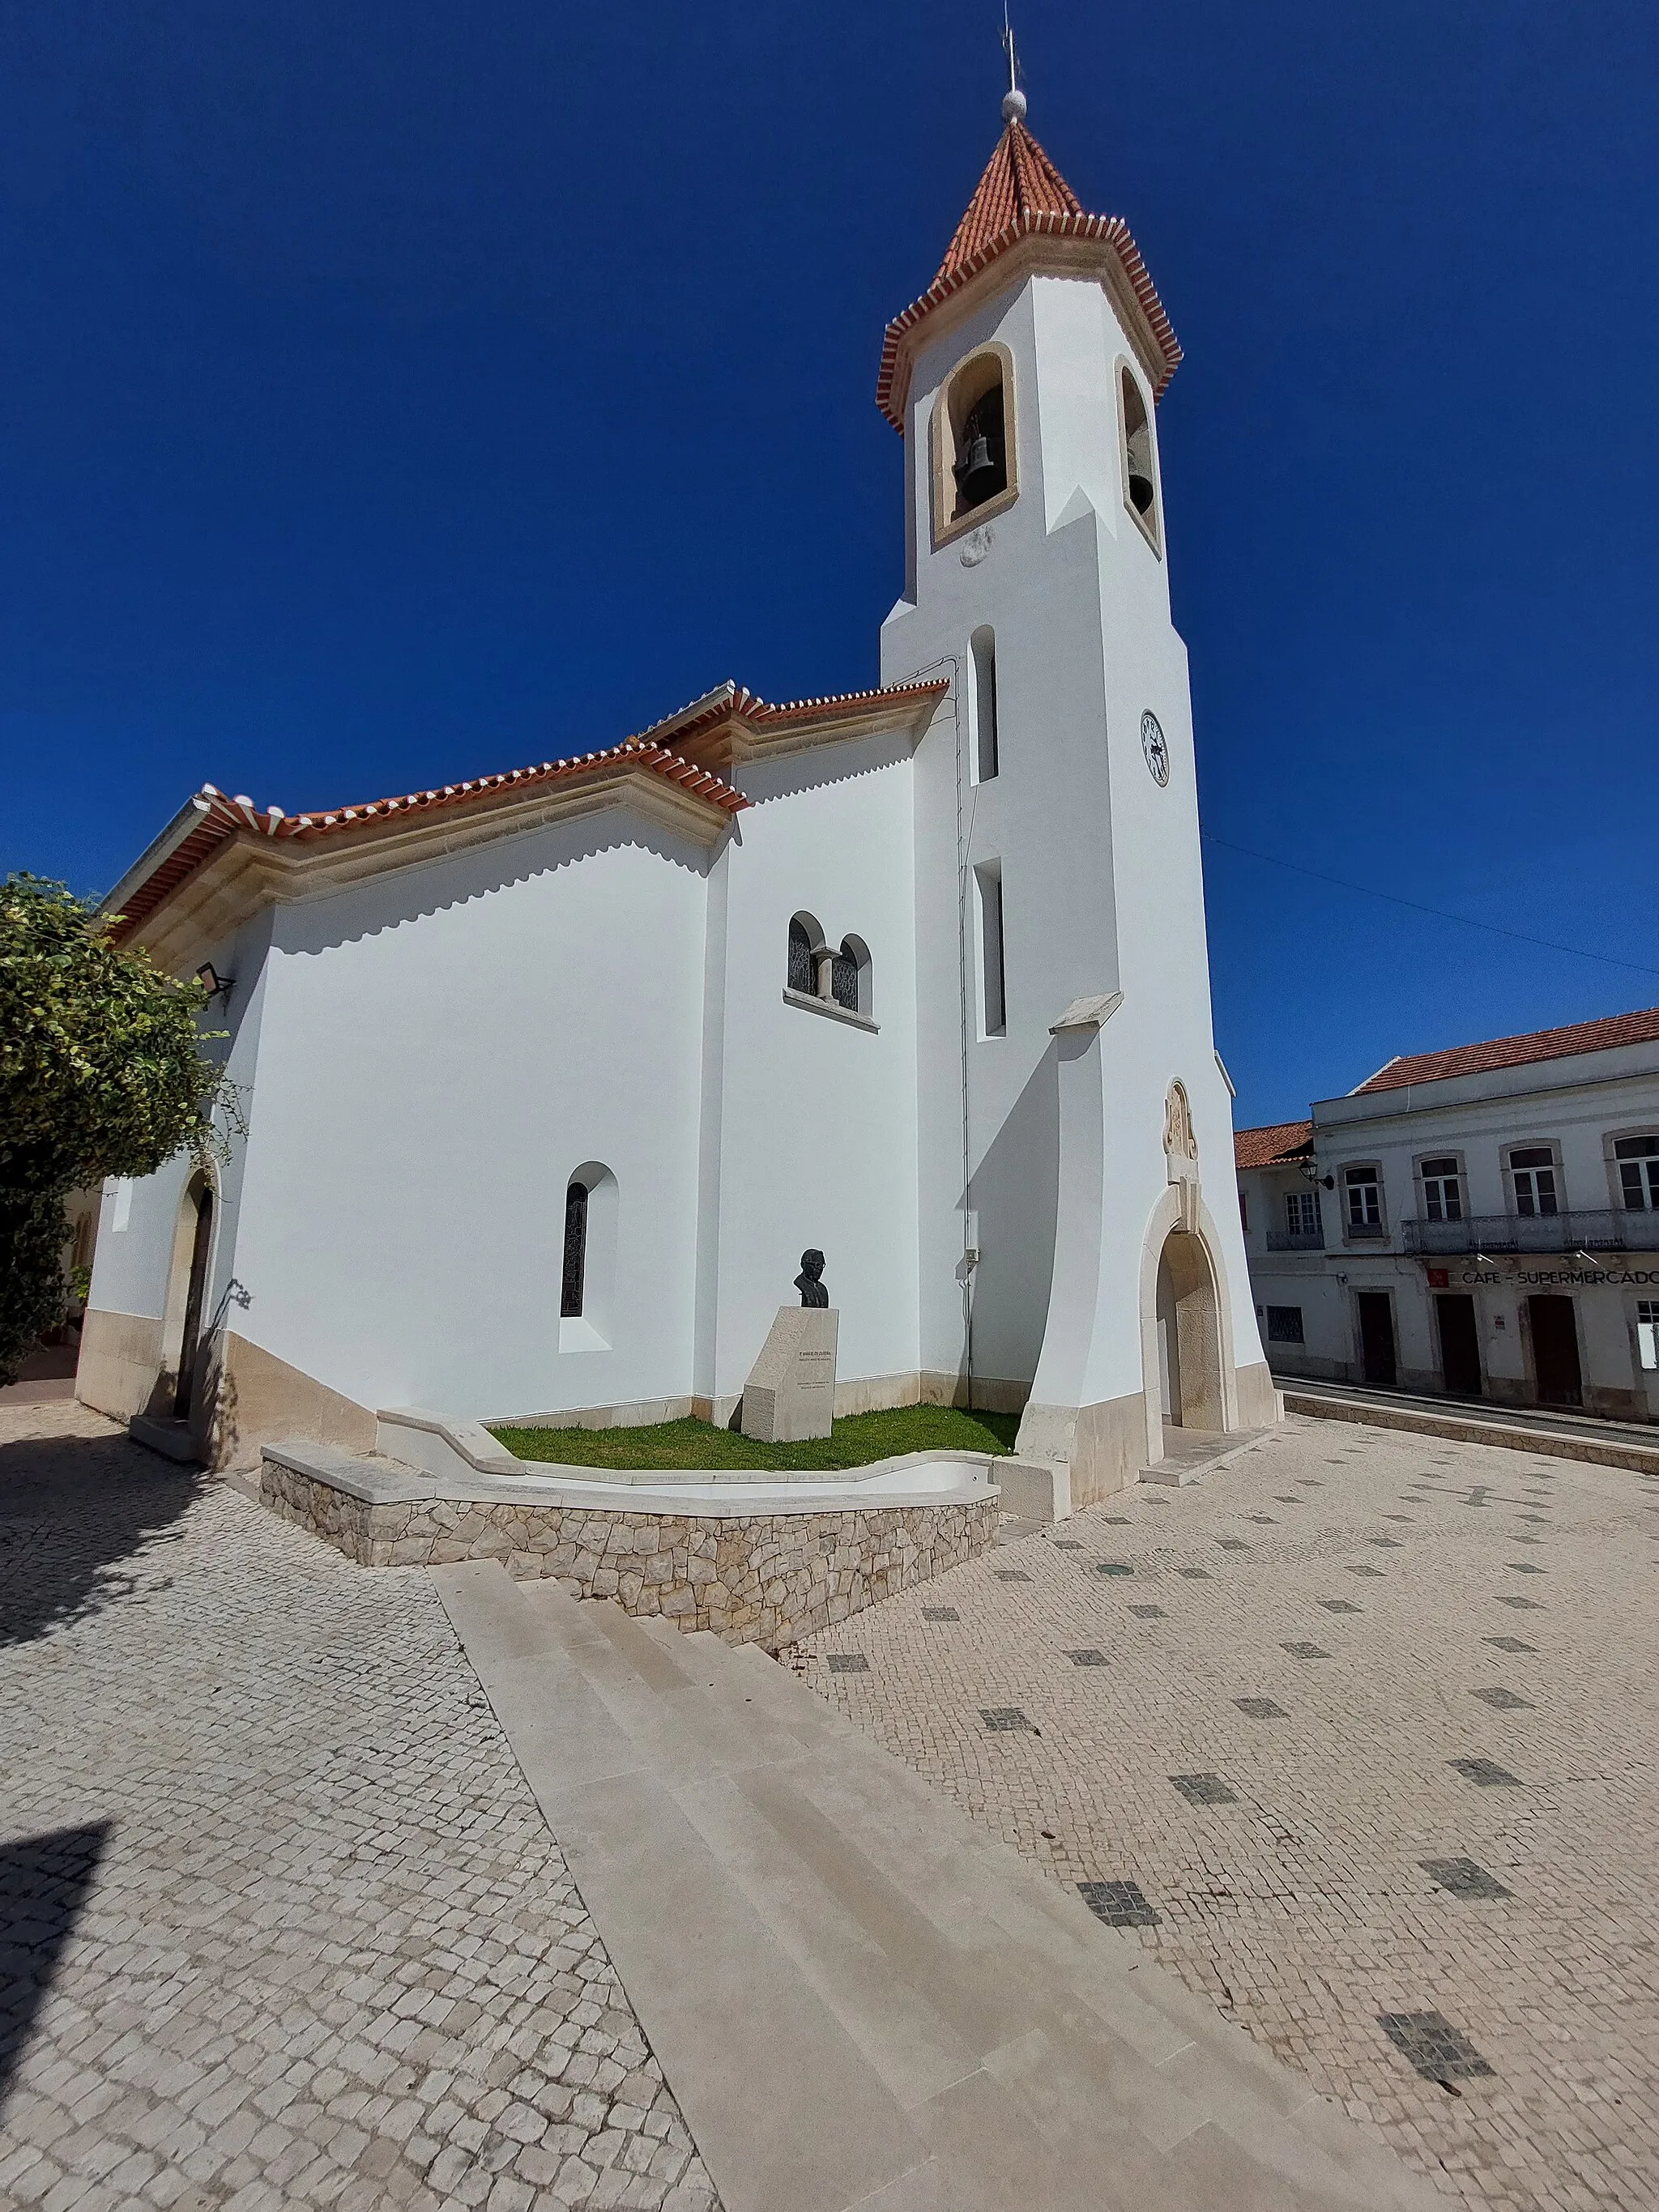 Photo showing: Fachada esquerda com torre sineira em destaque da Igreja Paroquial de Vimeiro